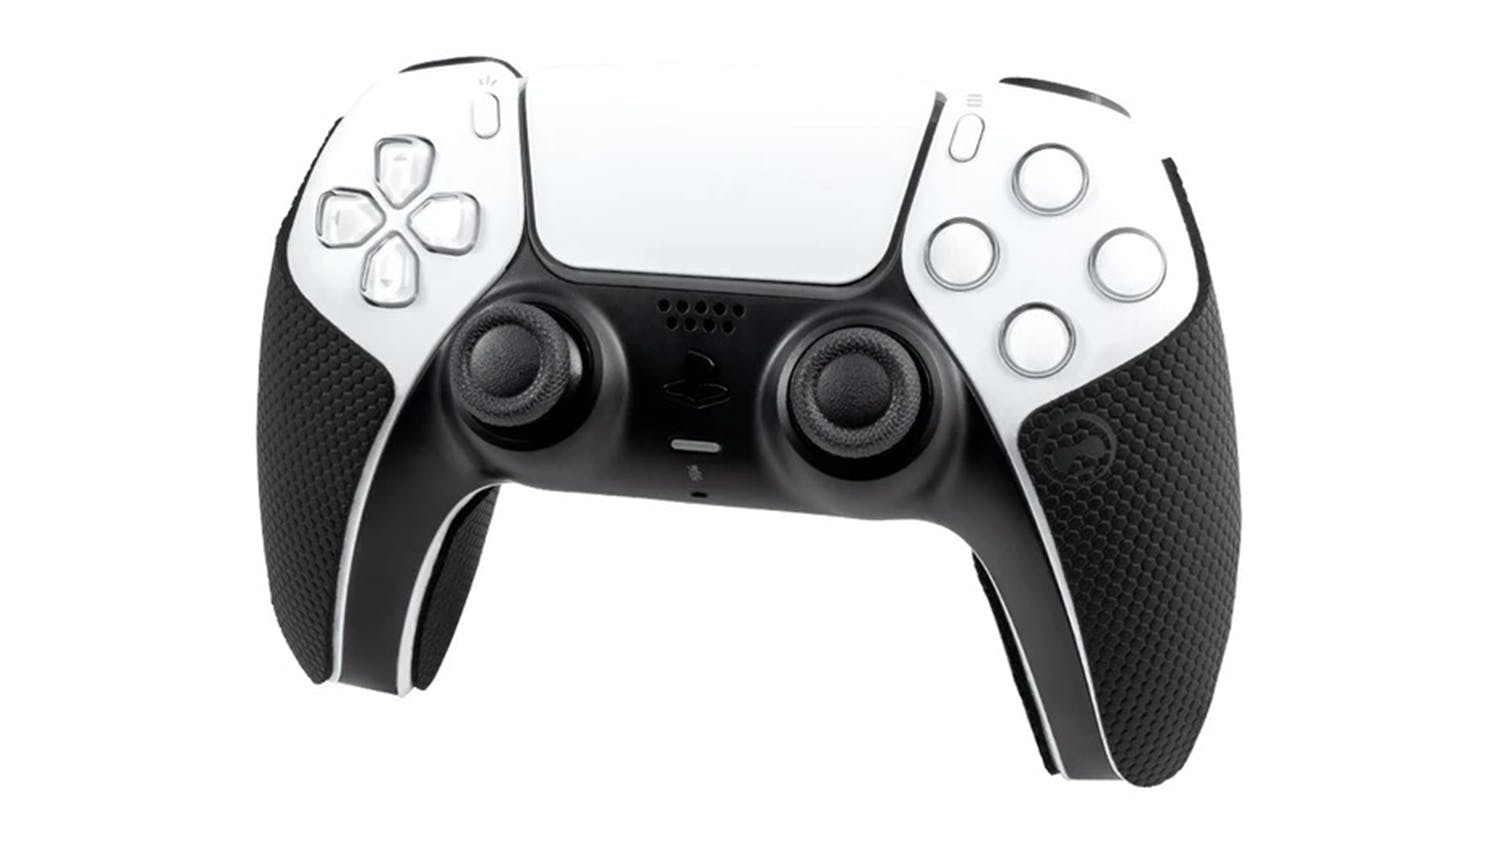 KontrolFreek Performance Grips for PlayStation5 - Black